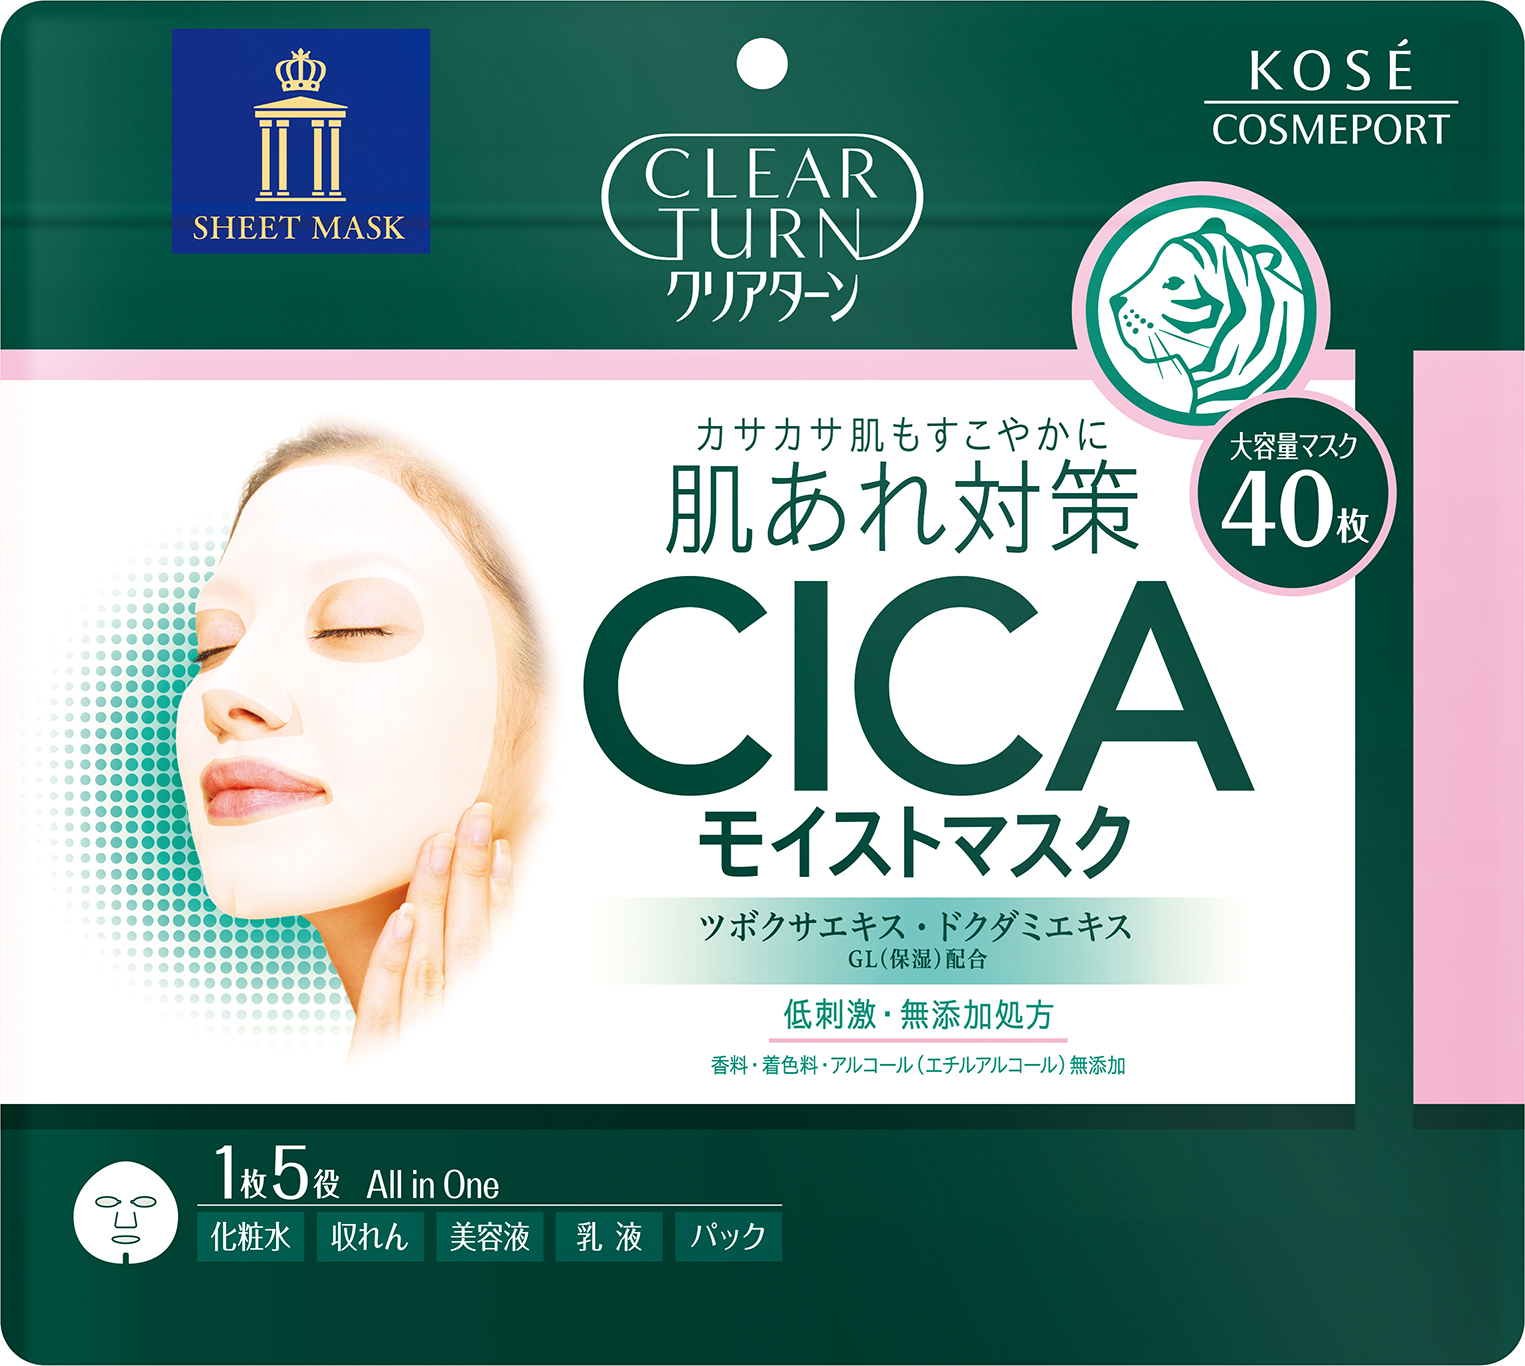 クリアターン から肌あれケアができる低刺激処方の Cica モイストマスク を発売 コーセーコスメポート株式会社のプレスリリース